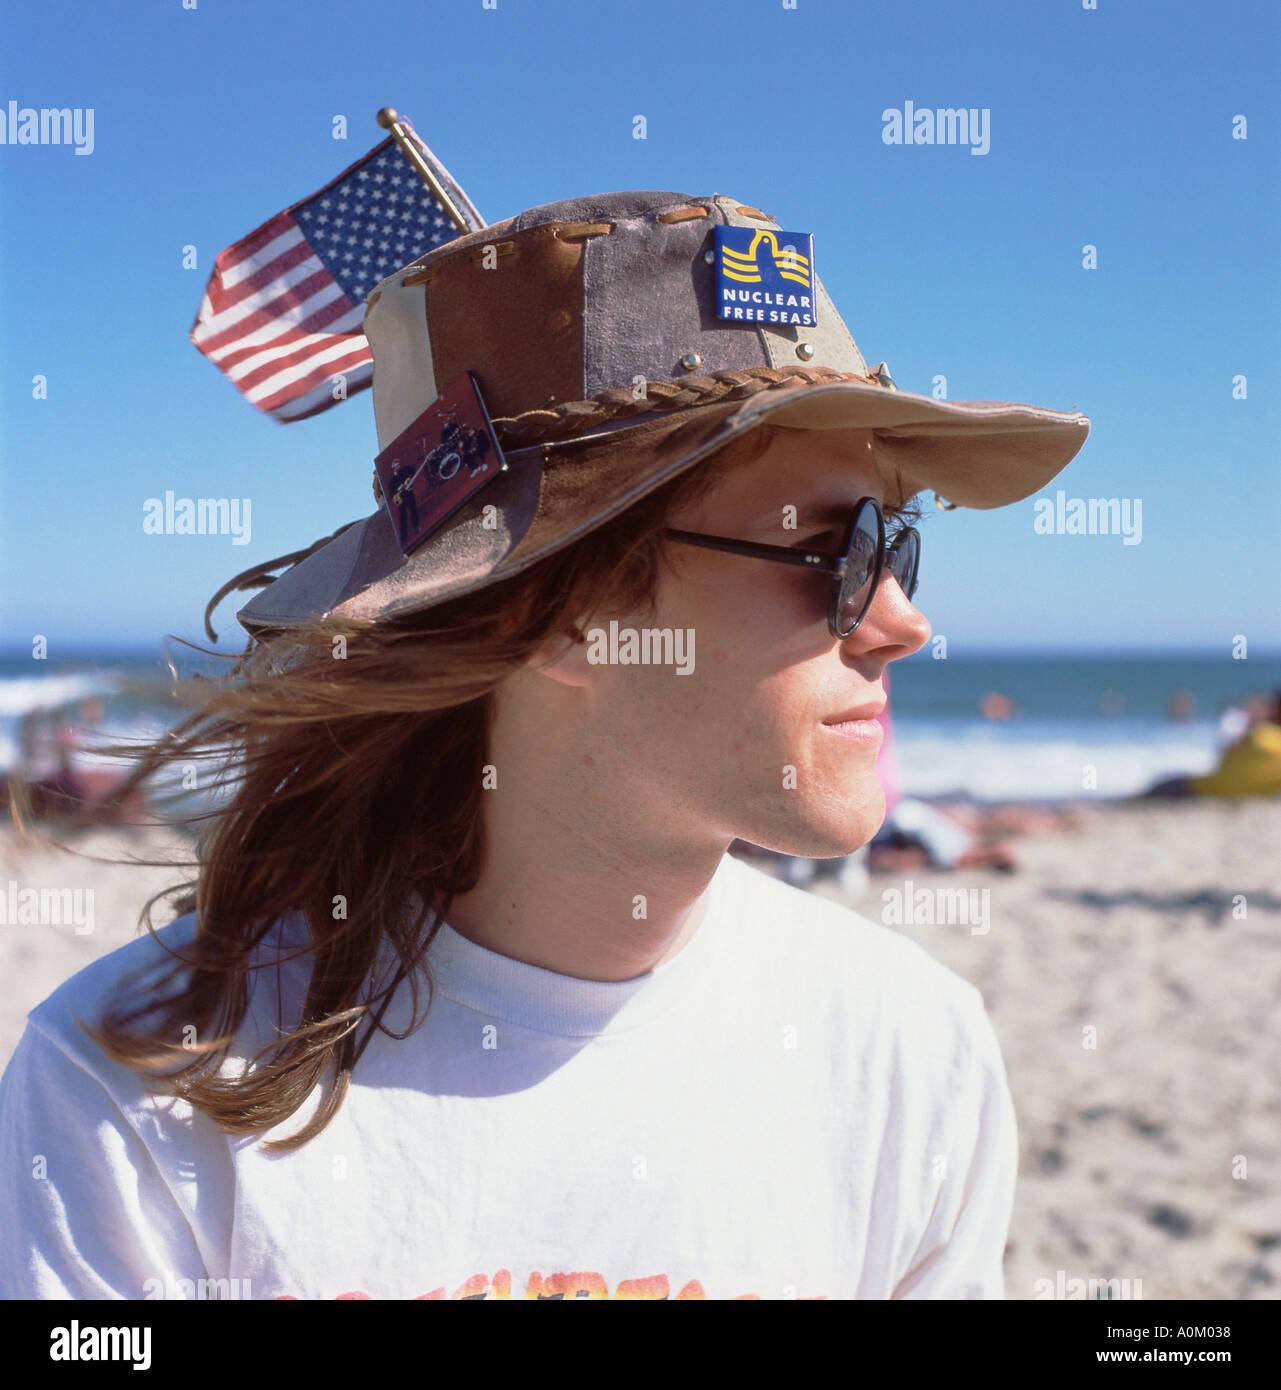 Ein junger Mann tragen Greenpeace Atom freien Meere Abzeichen und eine amerikanische Flagge auf seinen Hut Malibu LA California USA KATHY DEWITT Stockfoto